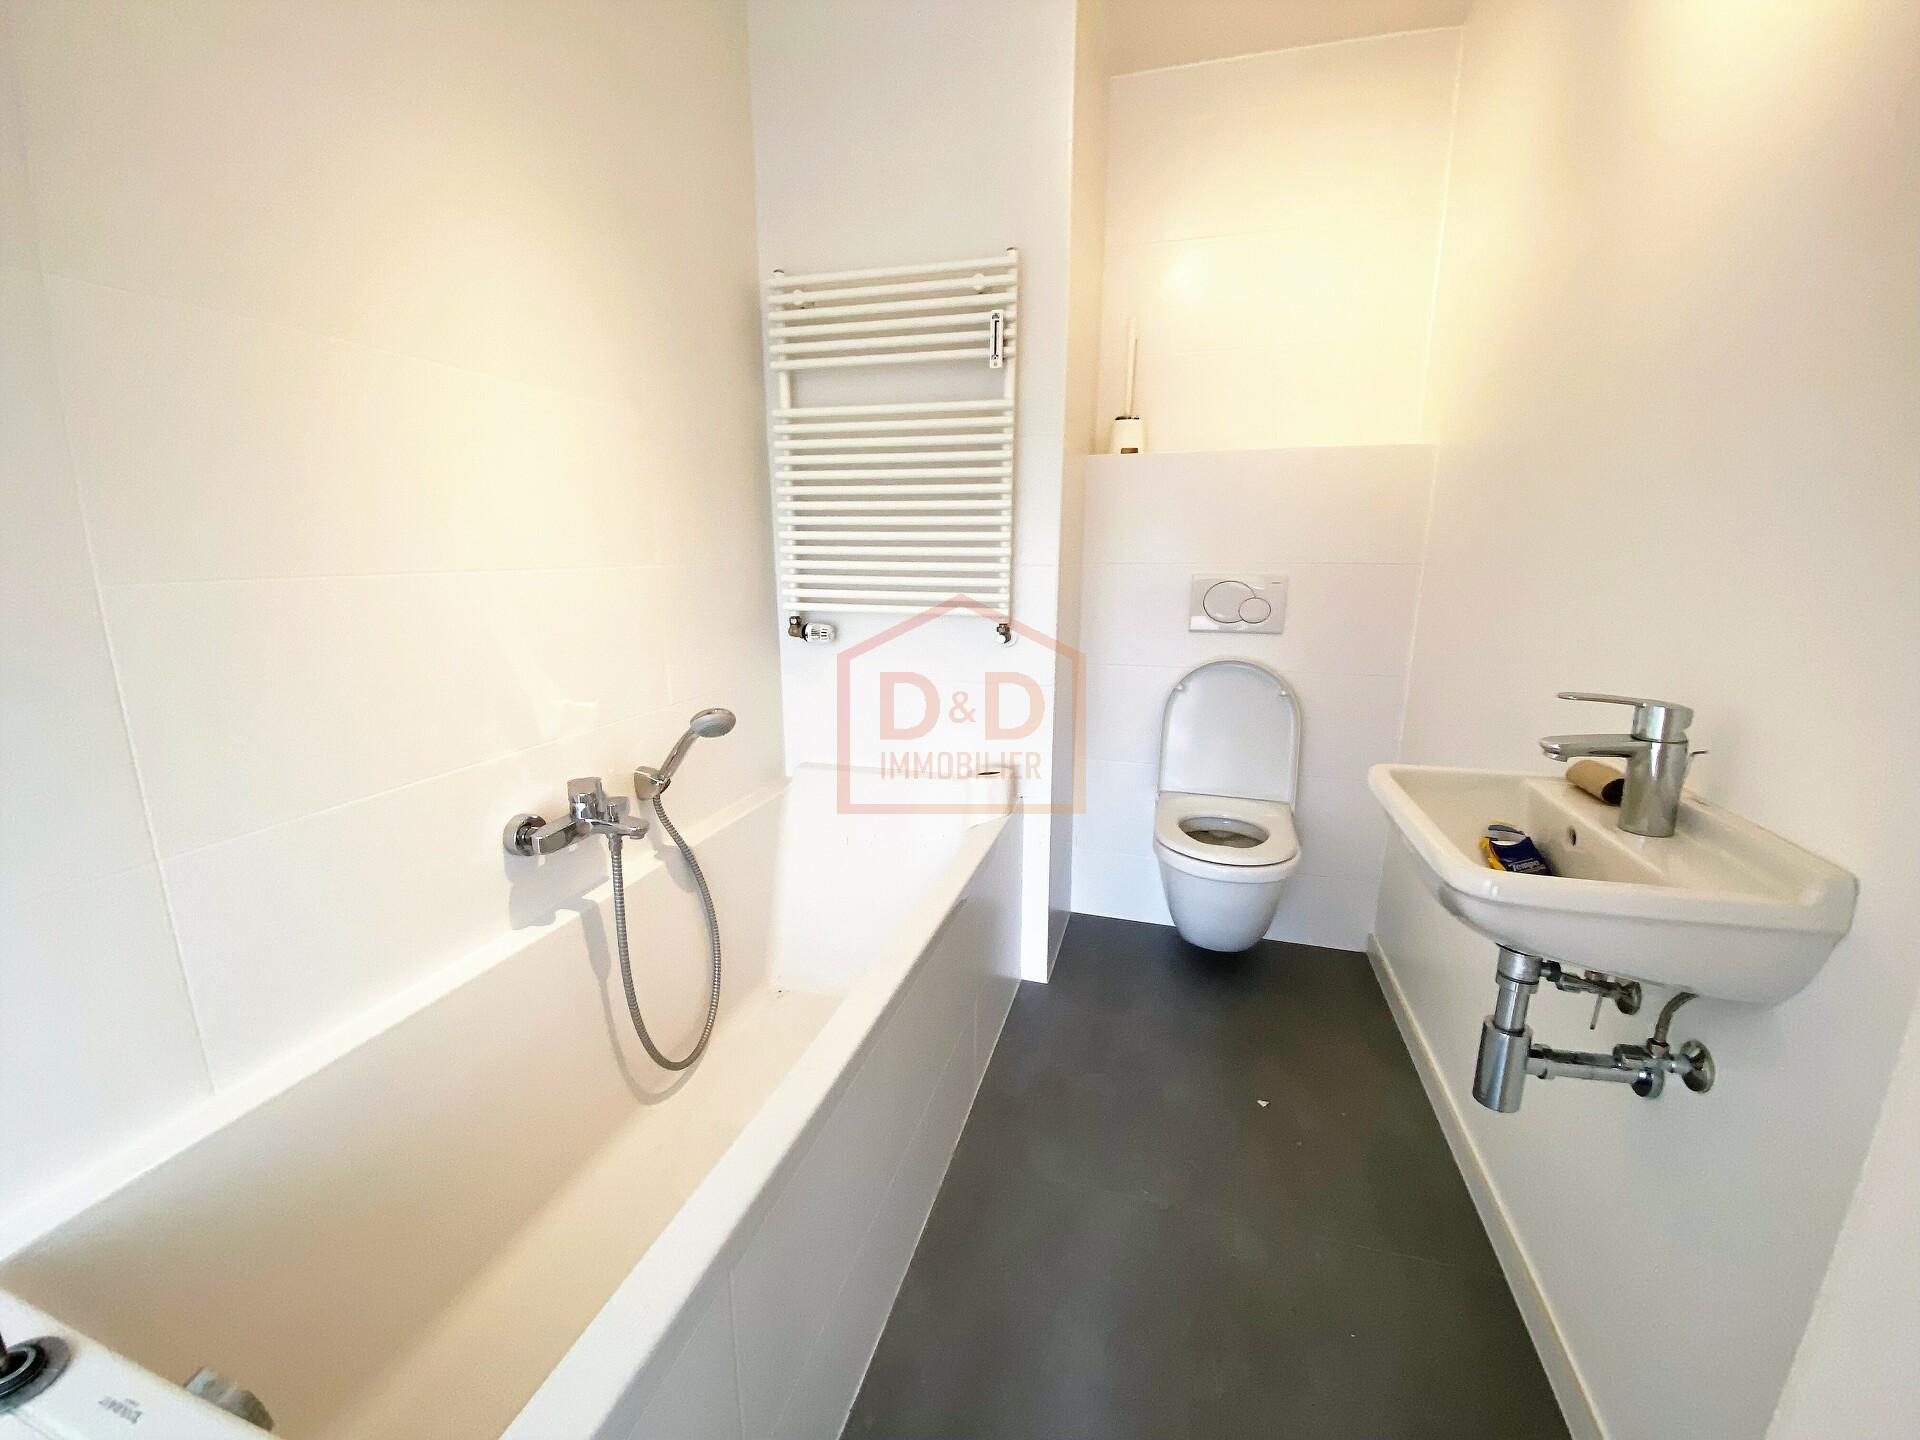 Appartement à Bridel, 85 m², 2 chambres, 1 salle de bain, 1 garage, 2 000 €/mois